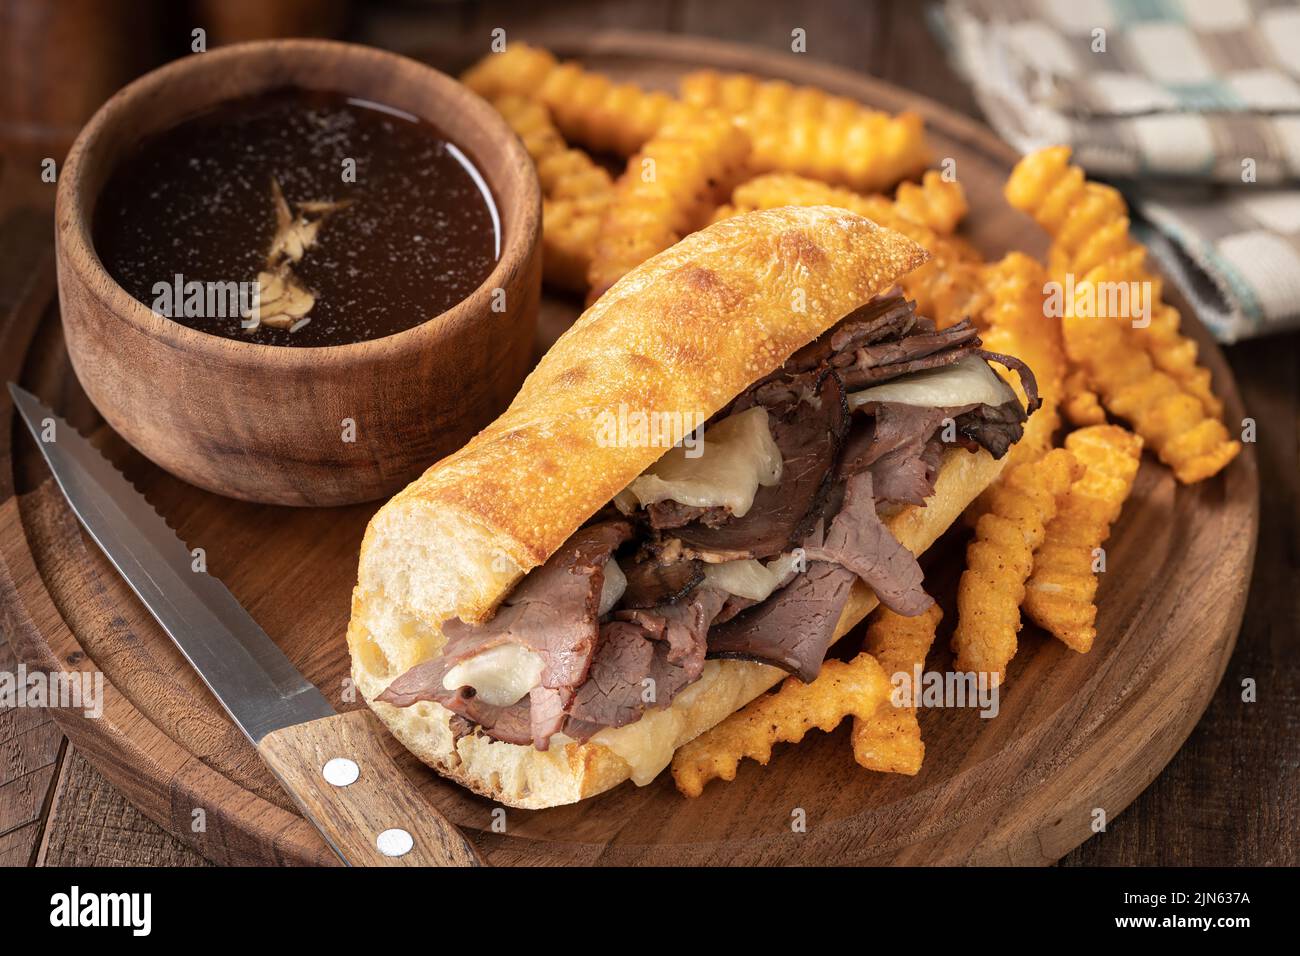 Sándwich francés y patatas fritas con un cuenco de au jus ion una fuente de madera Foto de stock